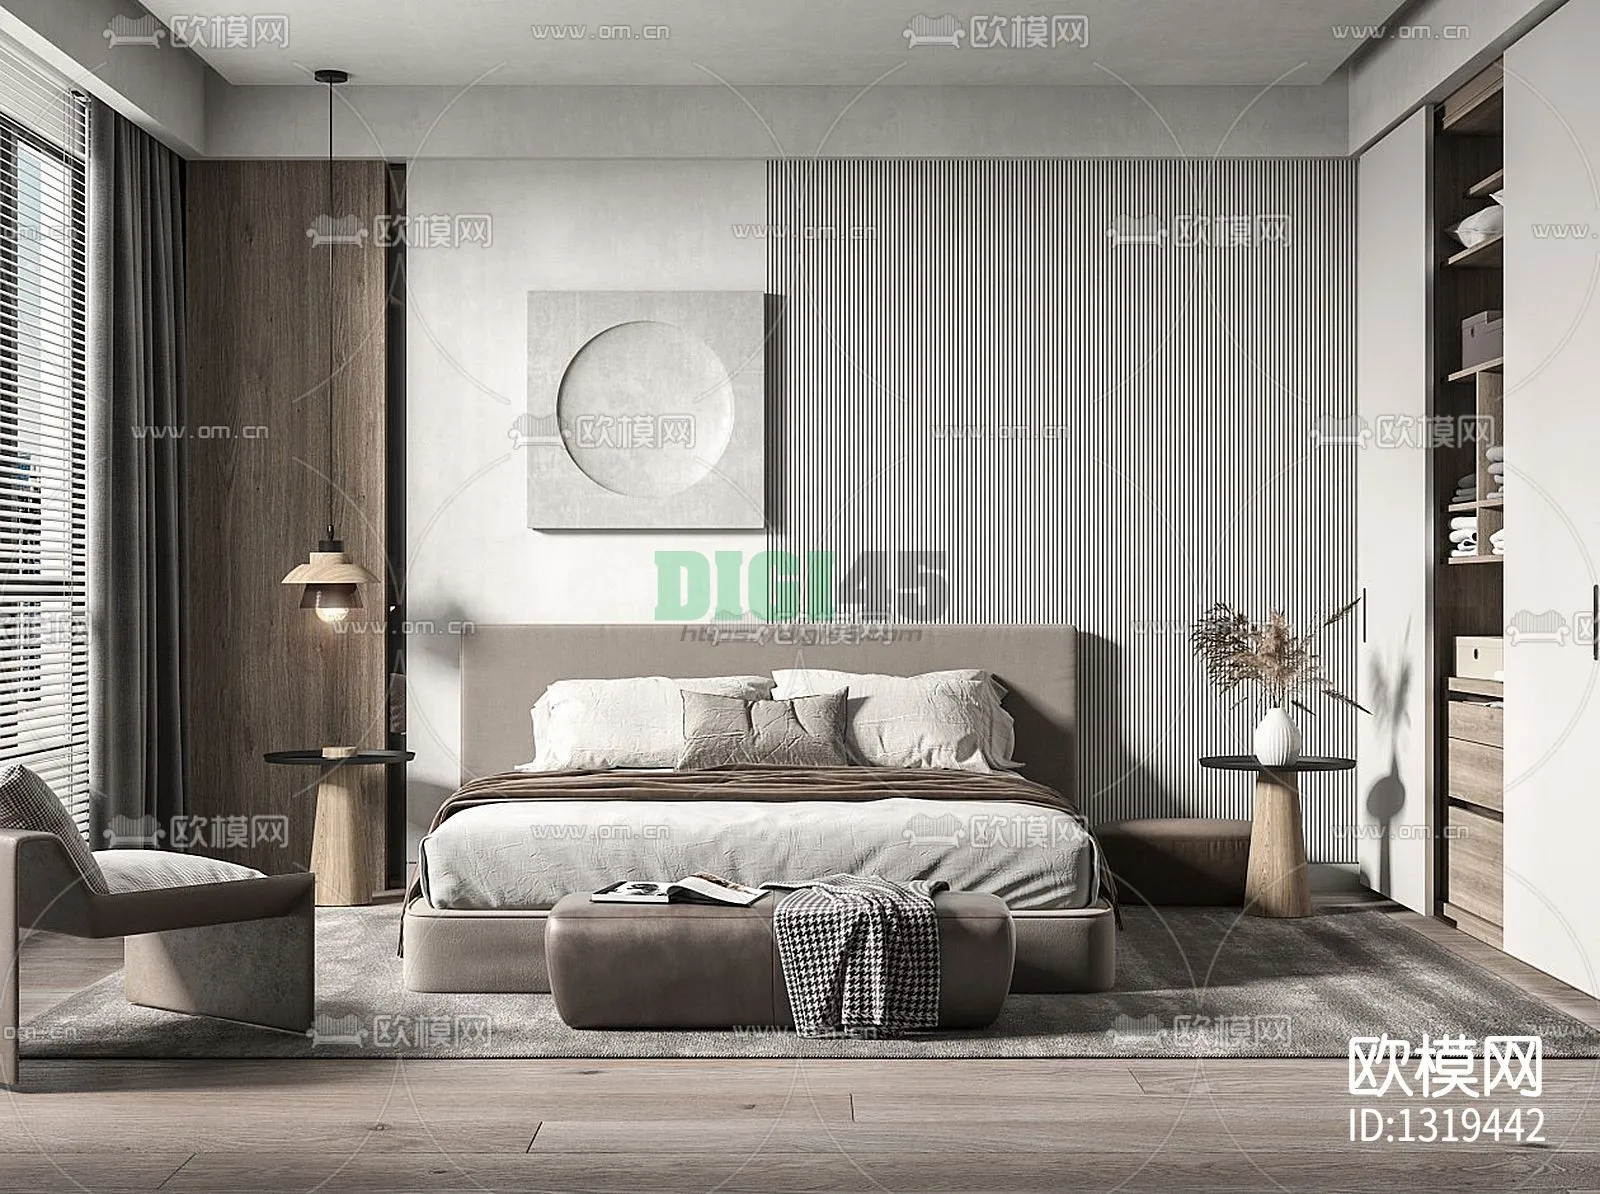 Bedroom 3D Scenes – 1150